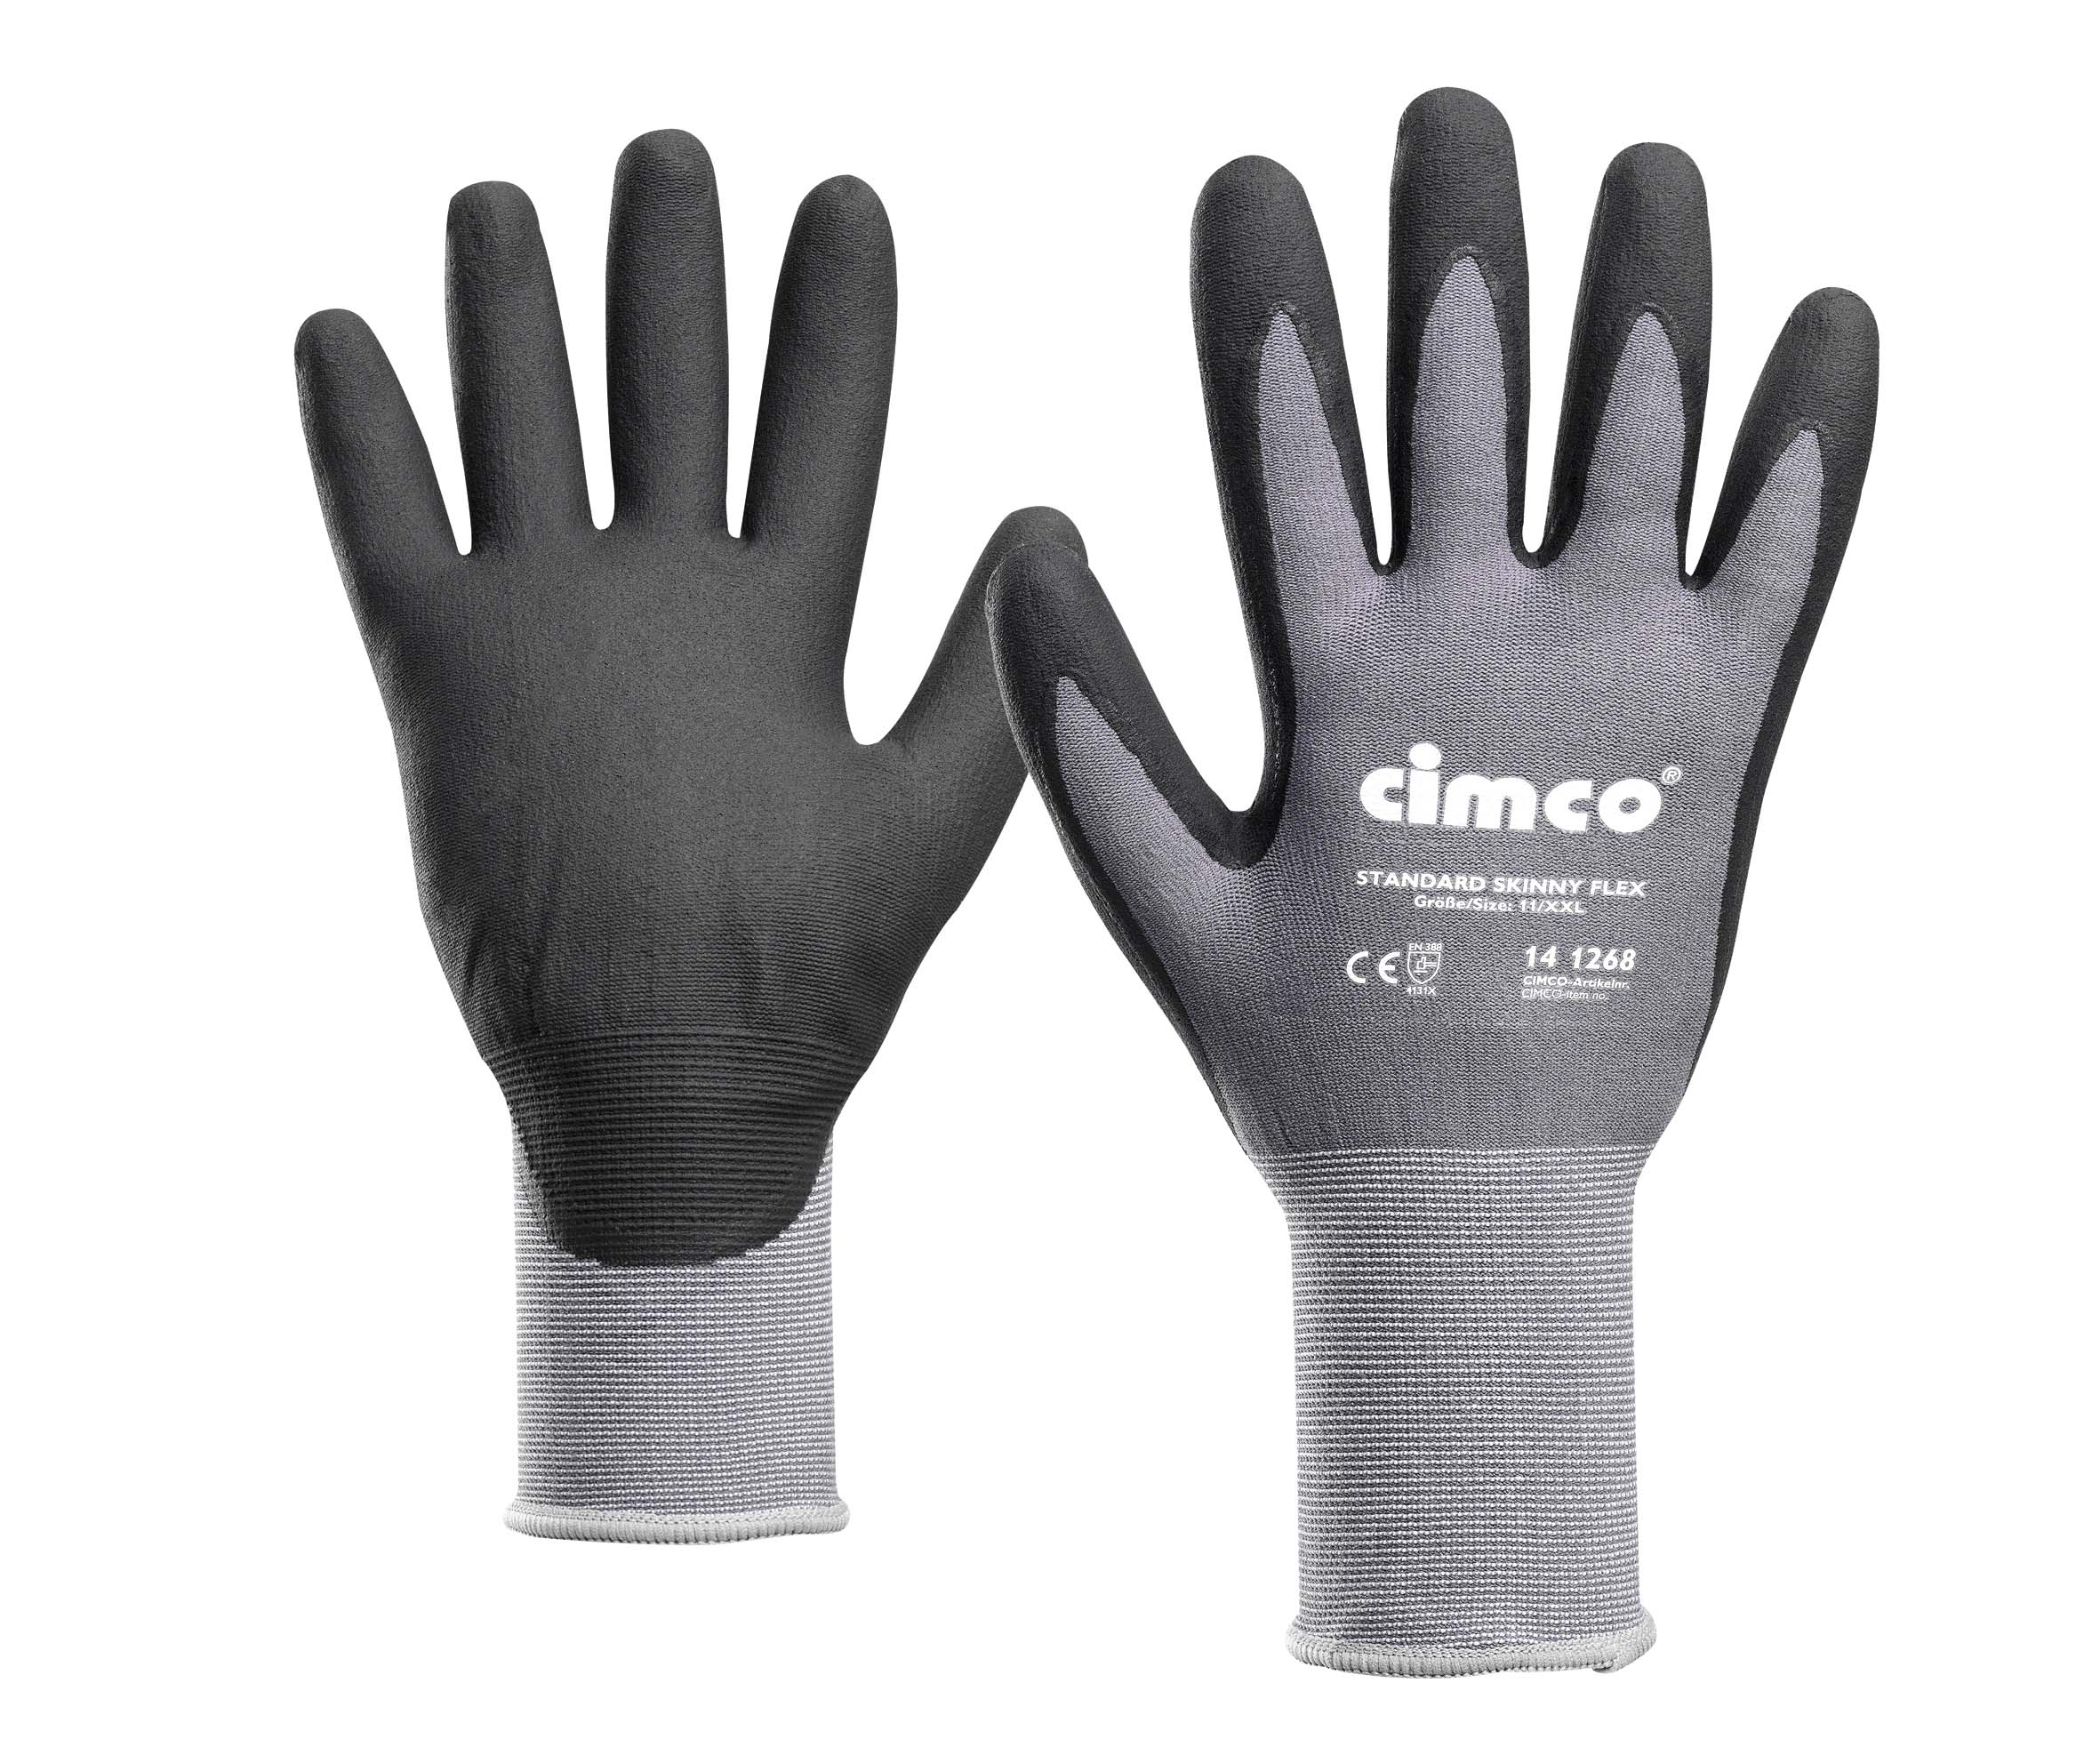  Werkhandschoenen Standard Skinny Flex, zwart/grijs, Maat 8/M 